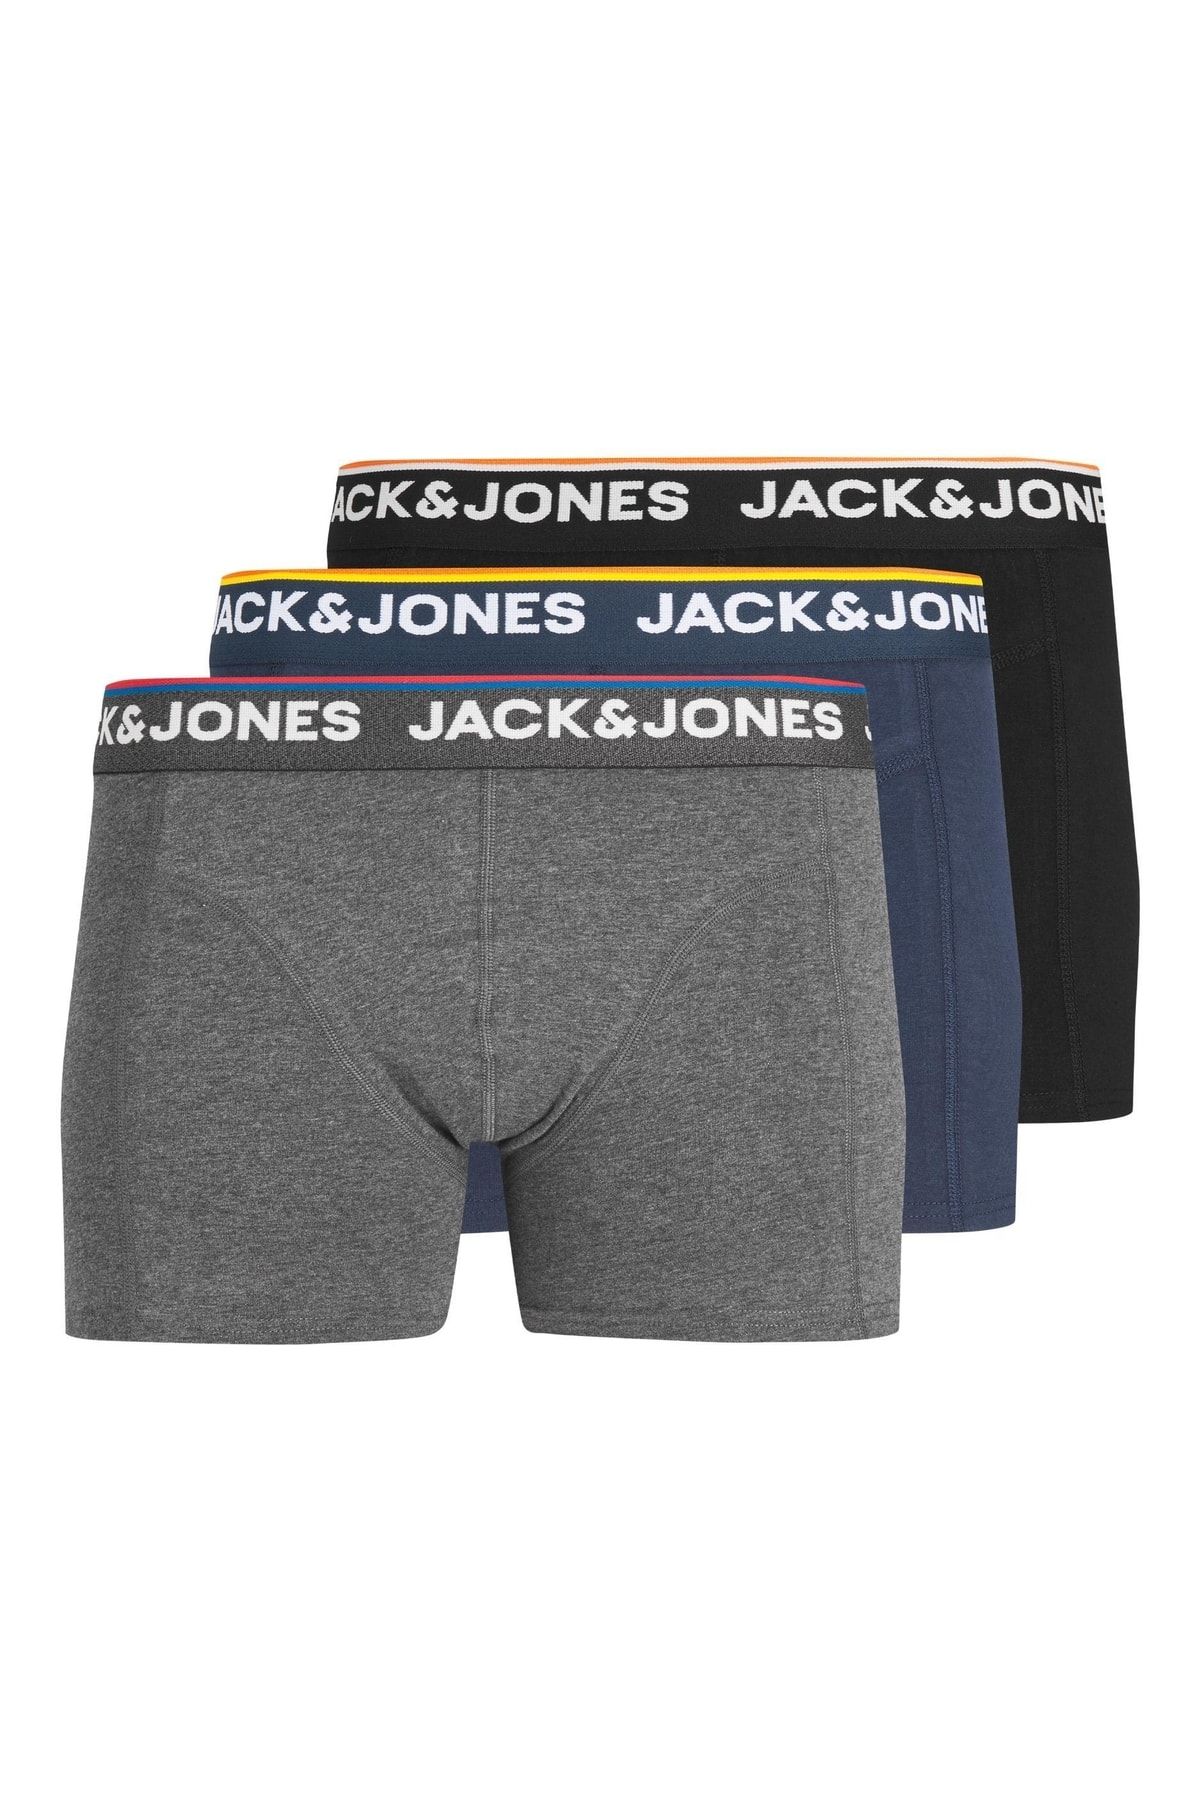 erwt Wanten struik Jack & Jones Jack Jones Don Trunks 3 Pack Erkek Gri Boxer 12213087-05  Fiyatı, Yorumları - Trendyol